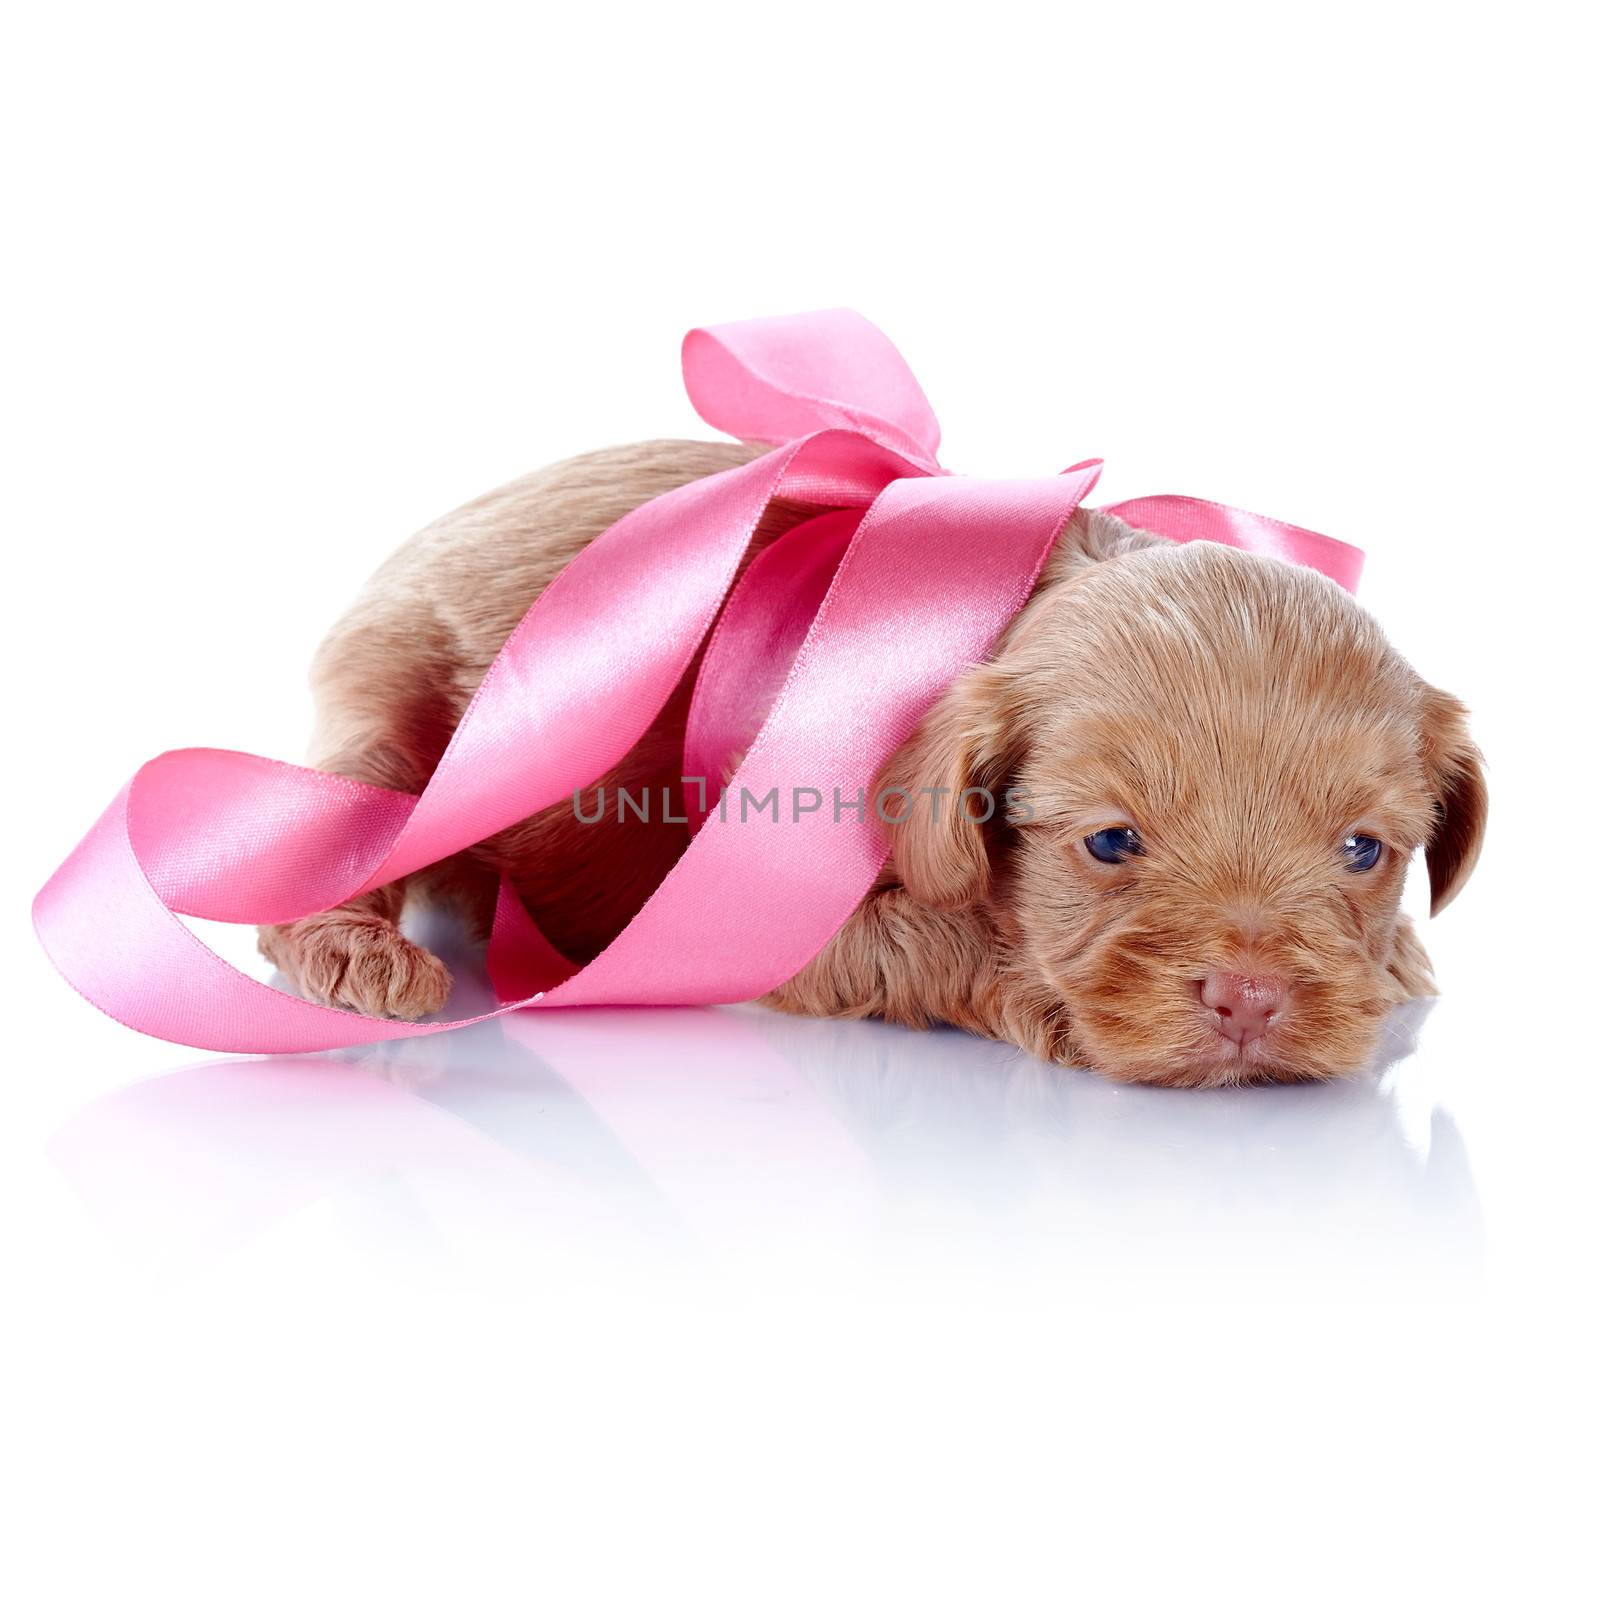 Puppy with a pink bow. by Azaliya